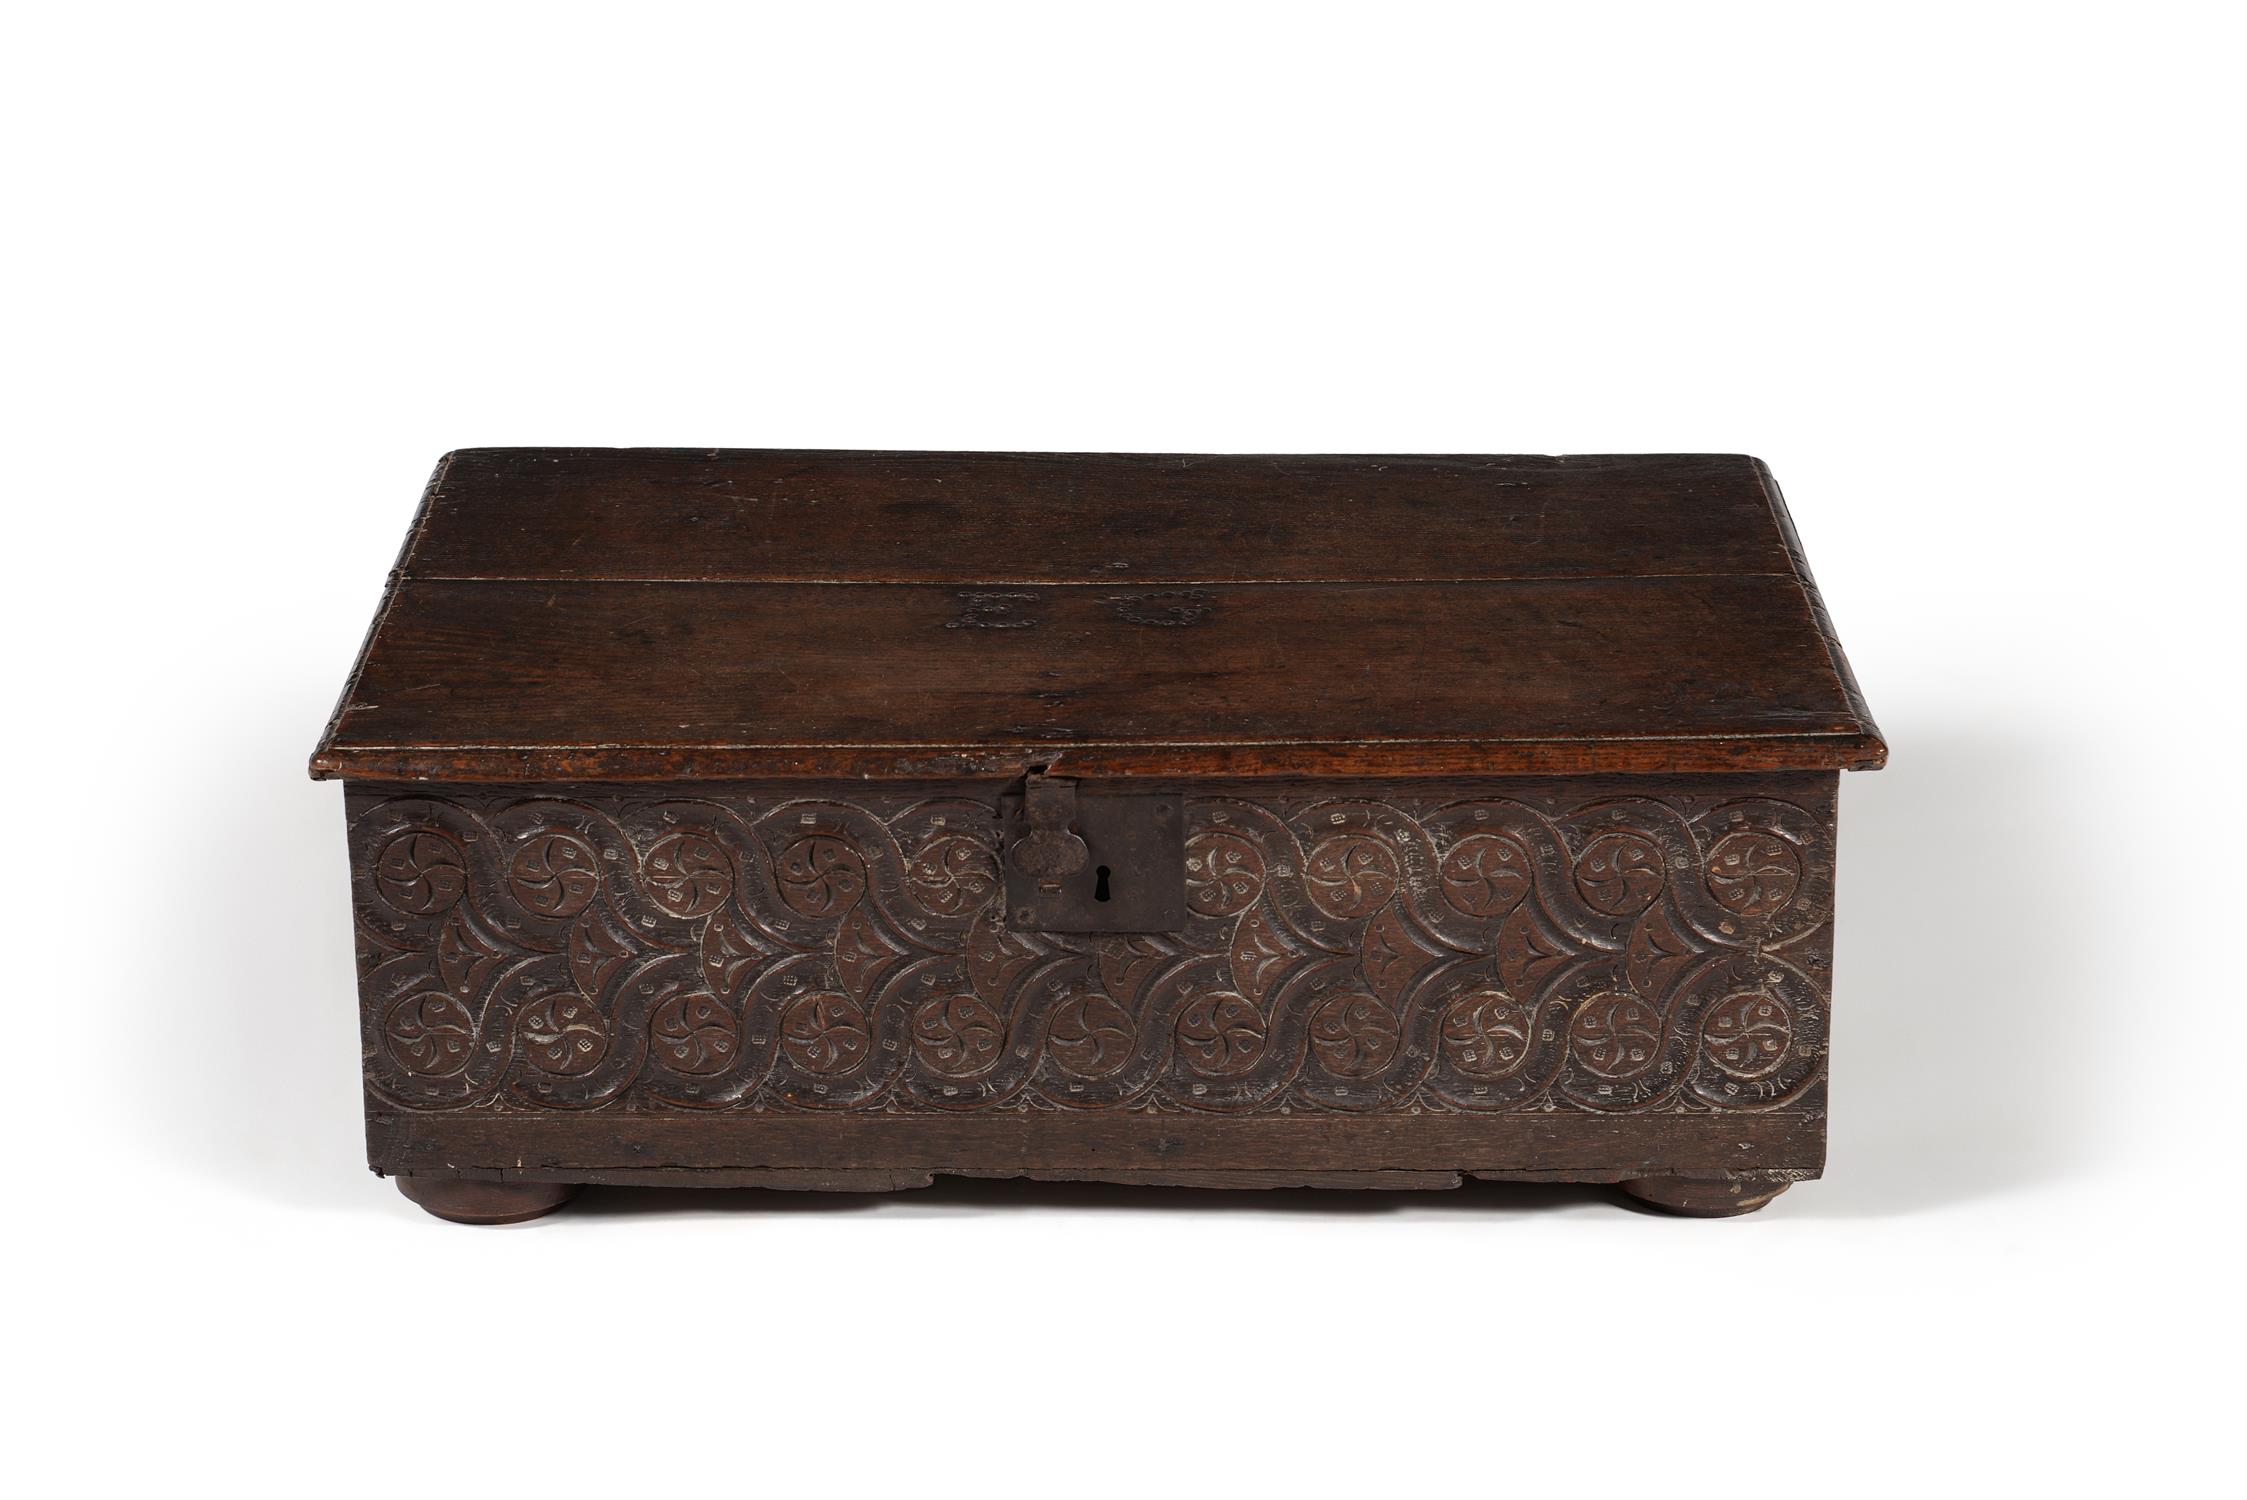 A Charles I carved oak box